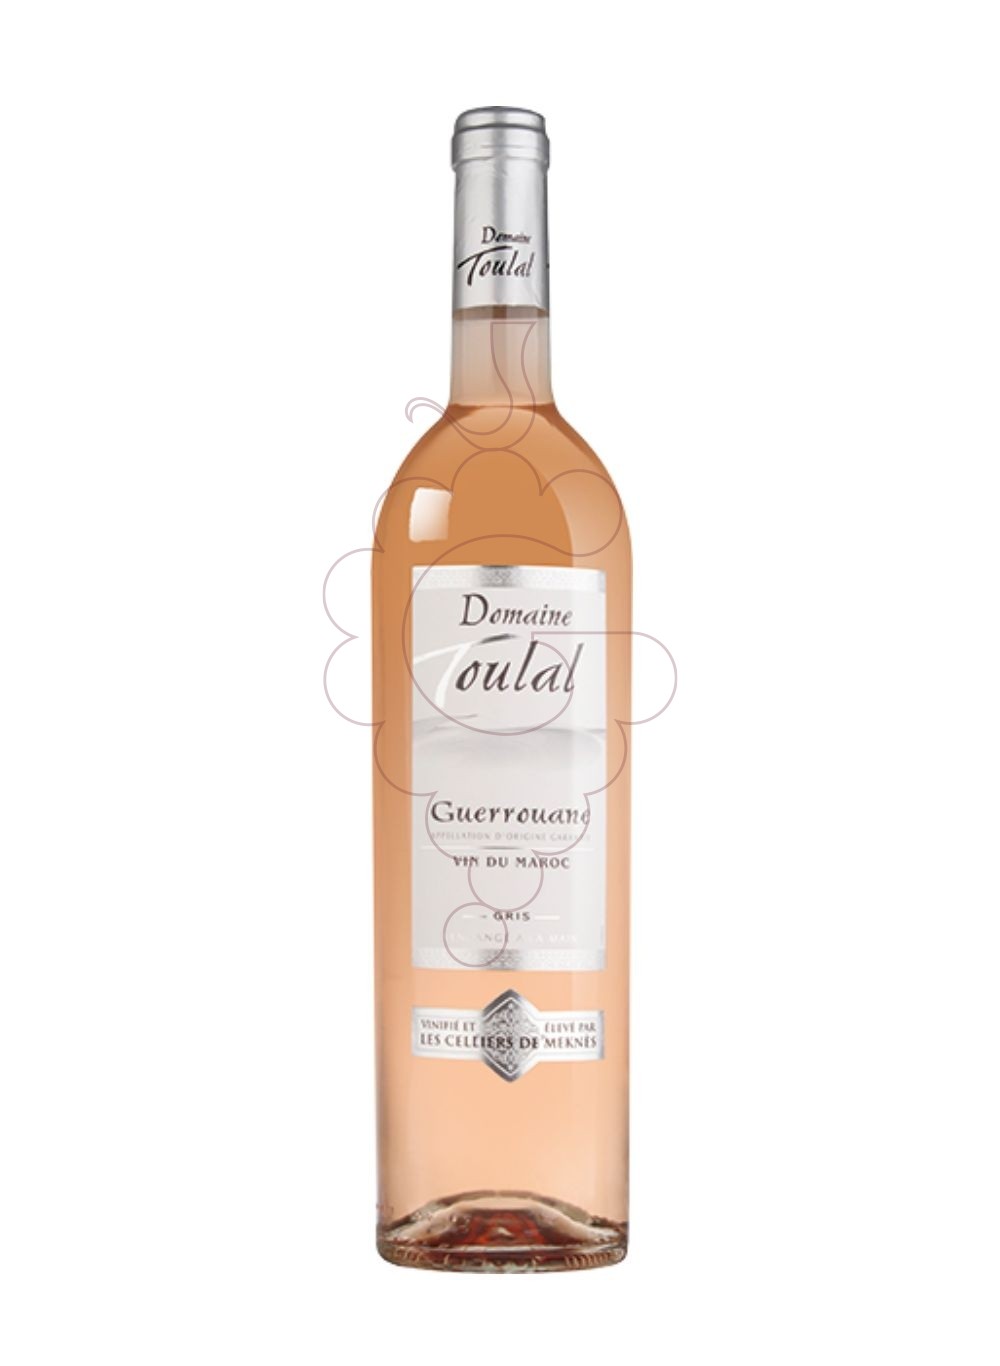 Photo Toulal guerrouane gris rose rosé wine